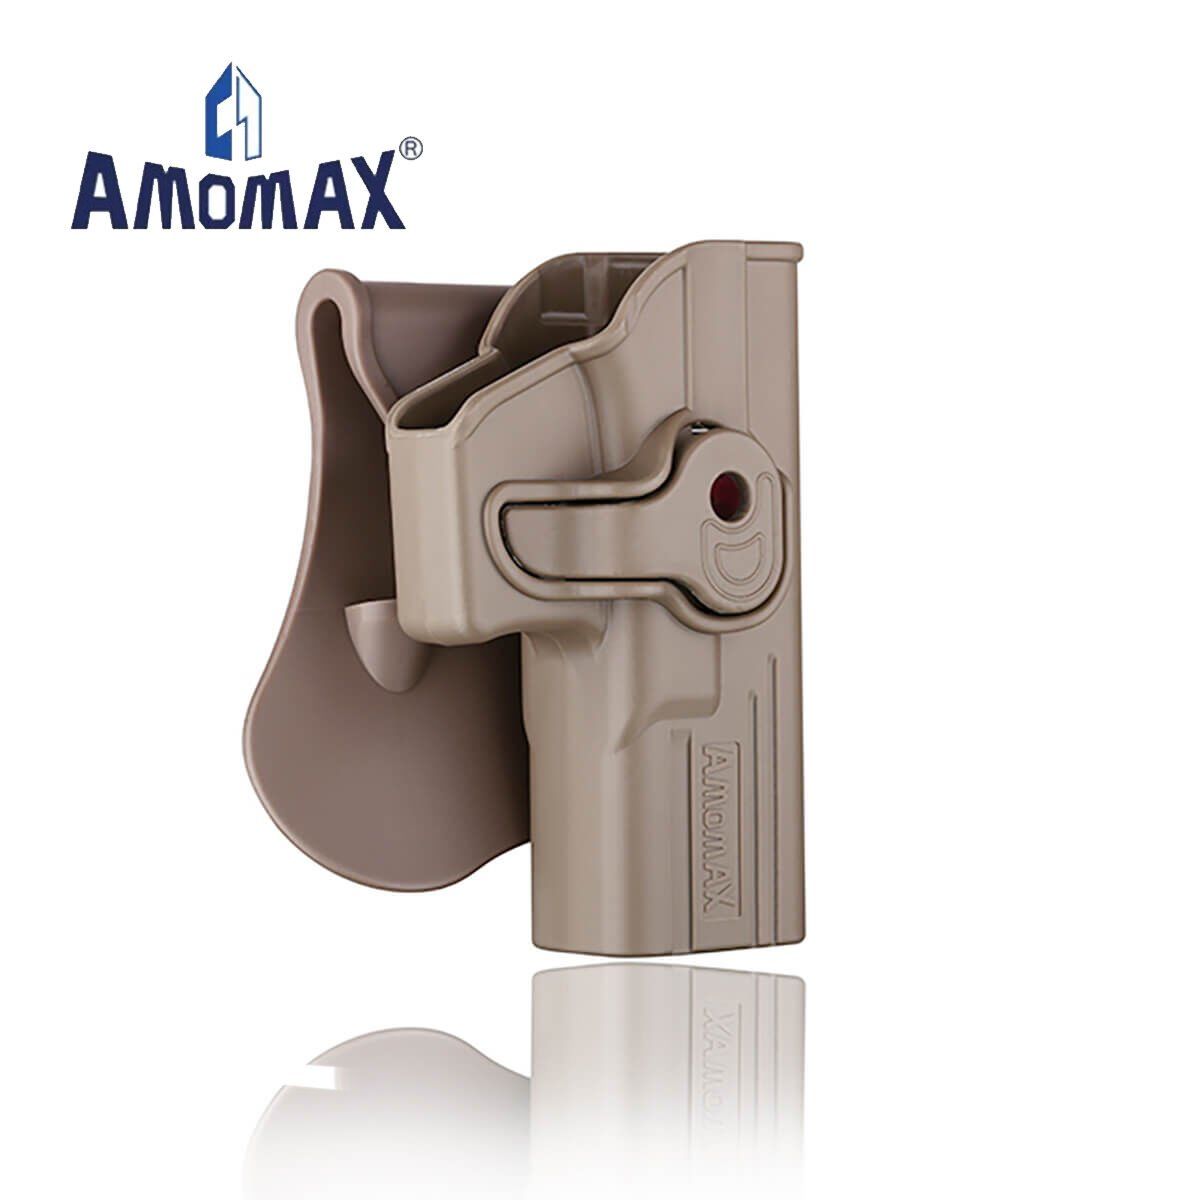 Amomax Tabanca Kılıfı Glock Tan  AM-GAGF